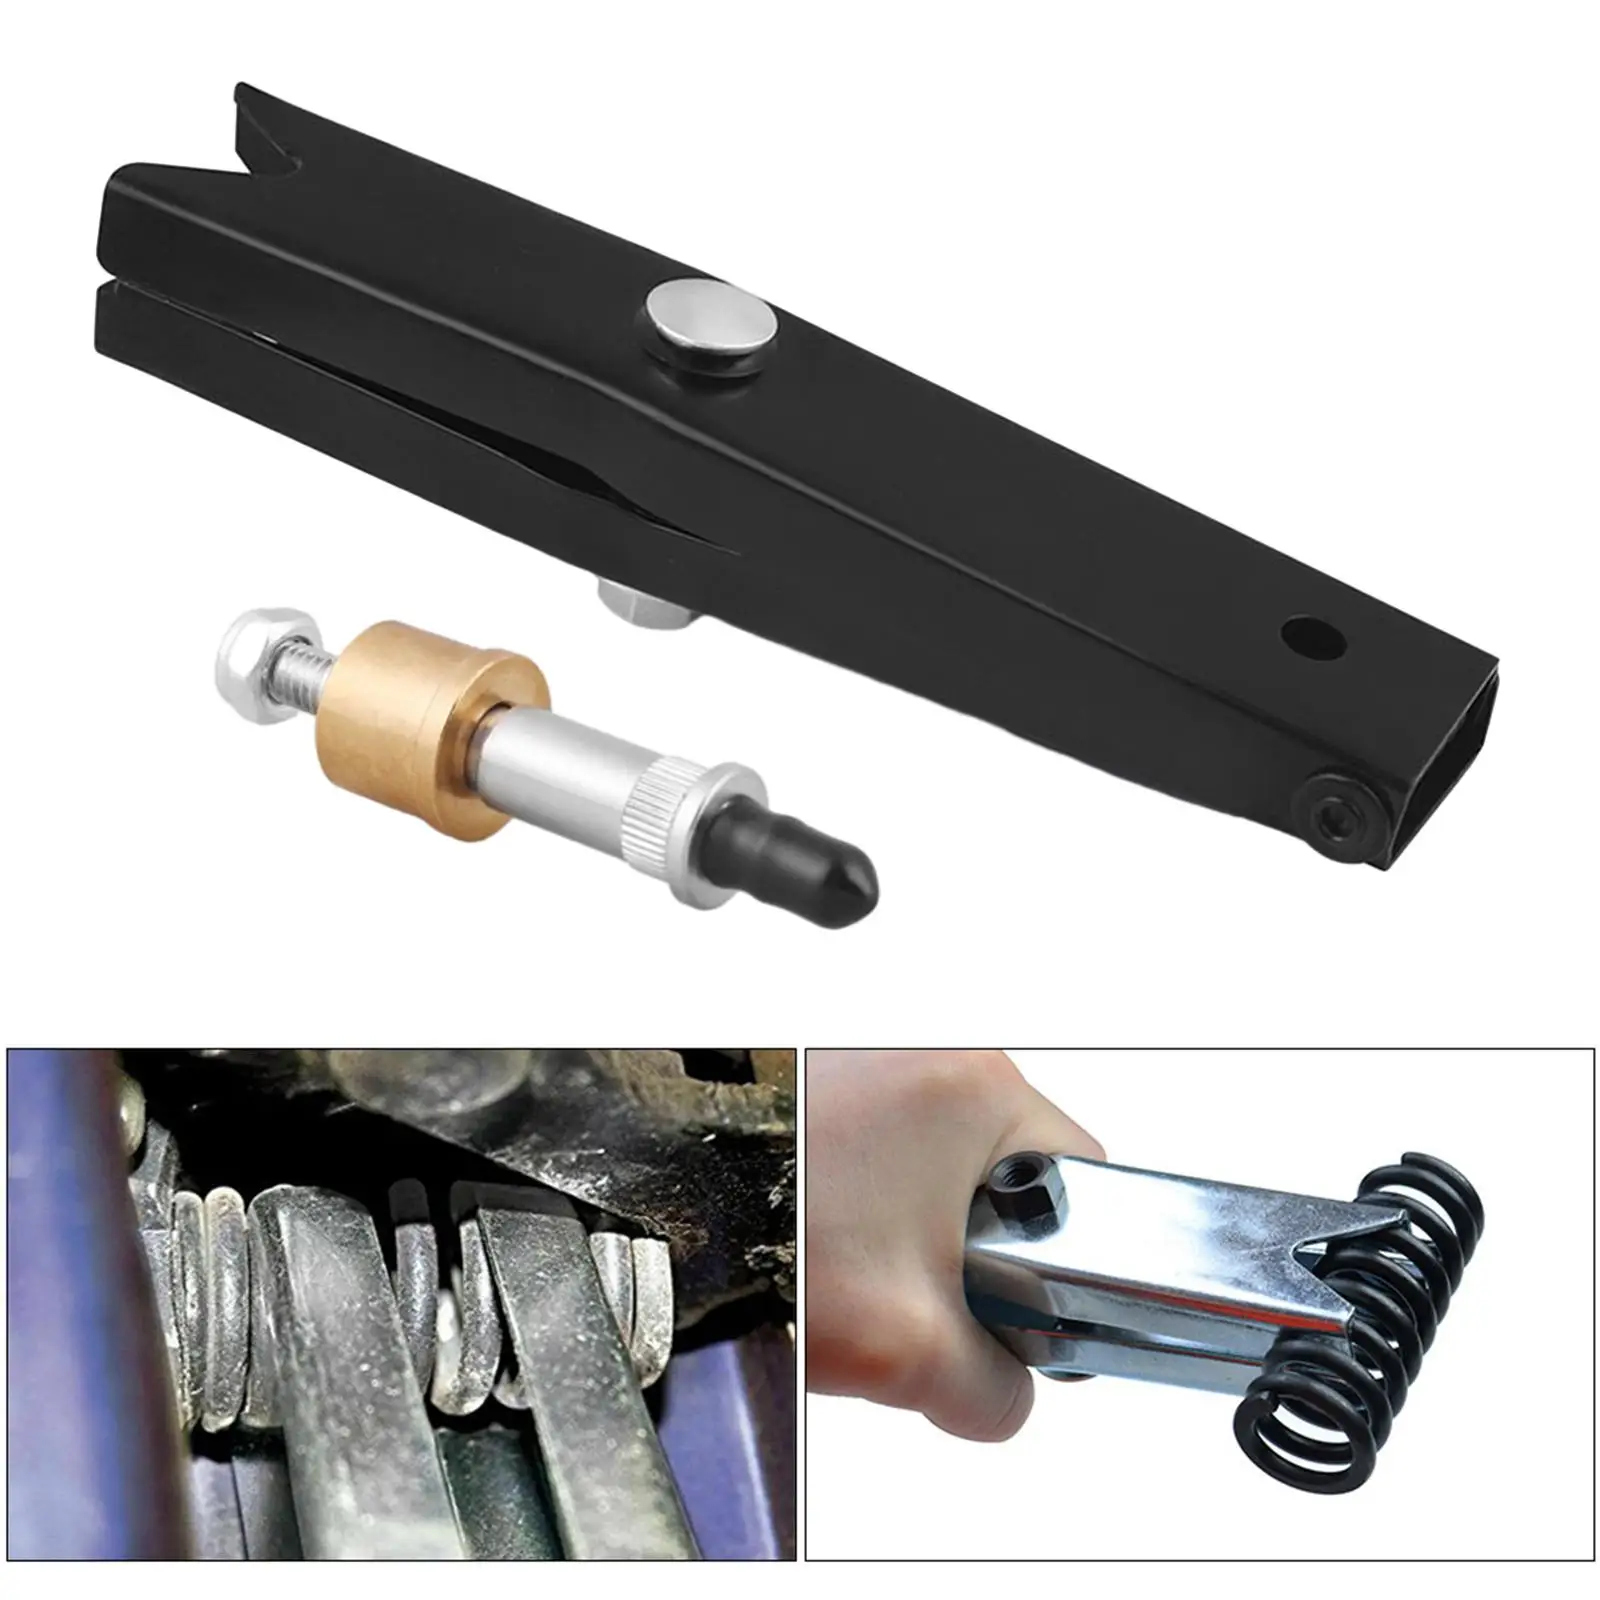 Door Hinge Roller Kits Automative Tool Set Durable with Spring Tool Door Hinge Detent Roller for Car Trucks Left Right Door